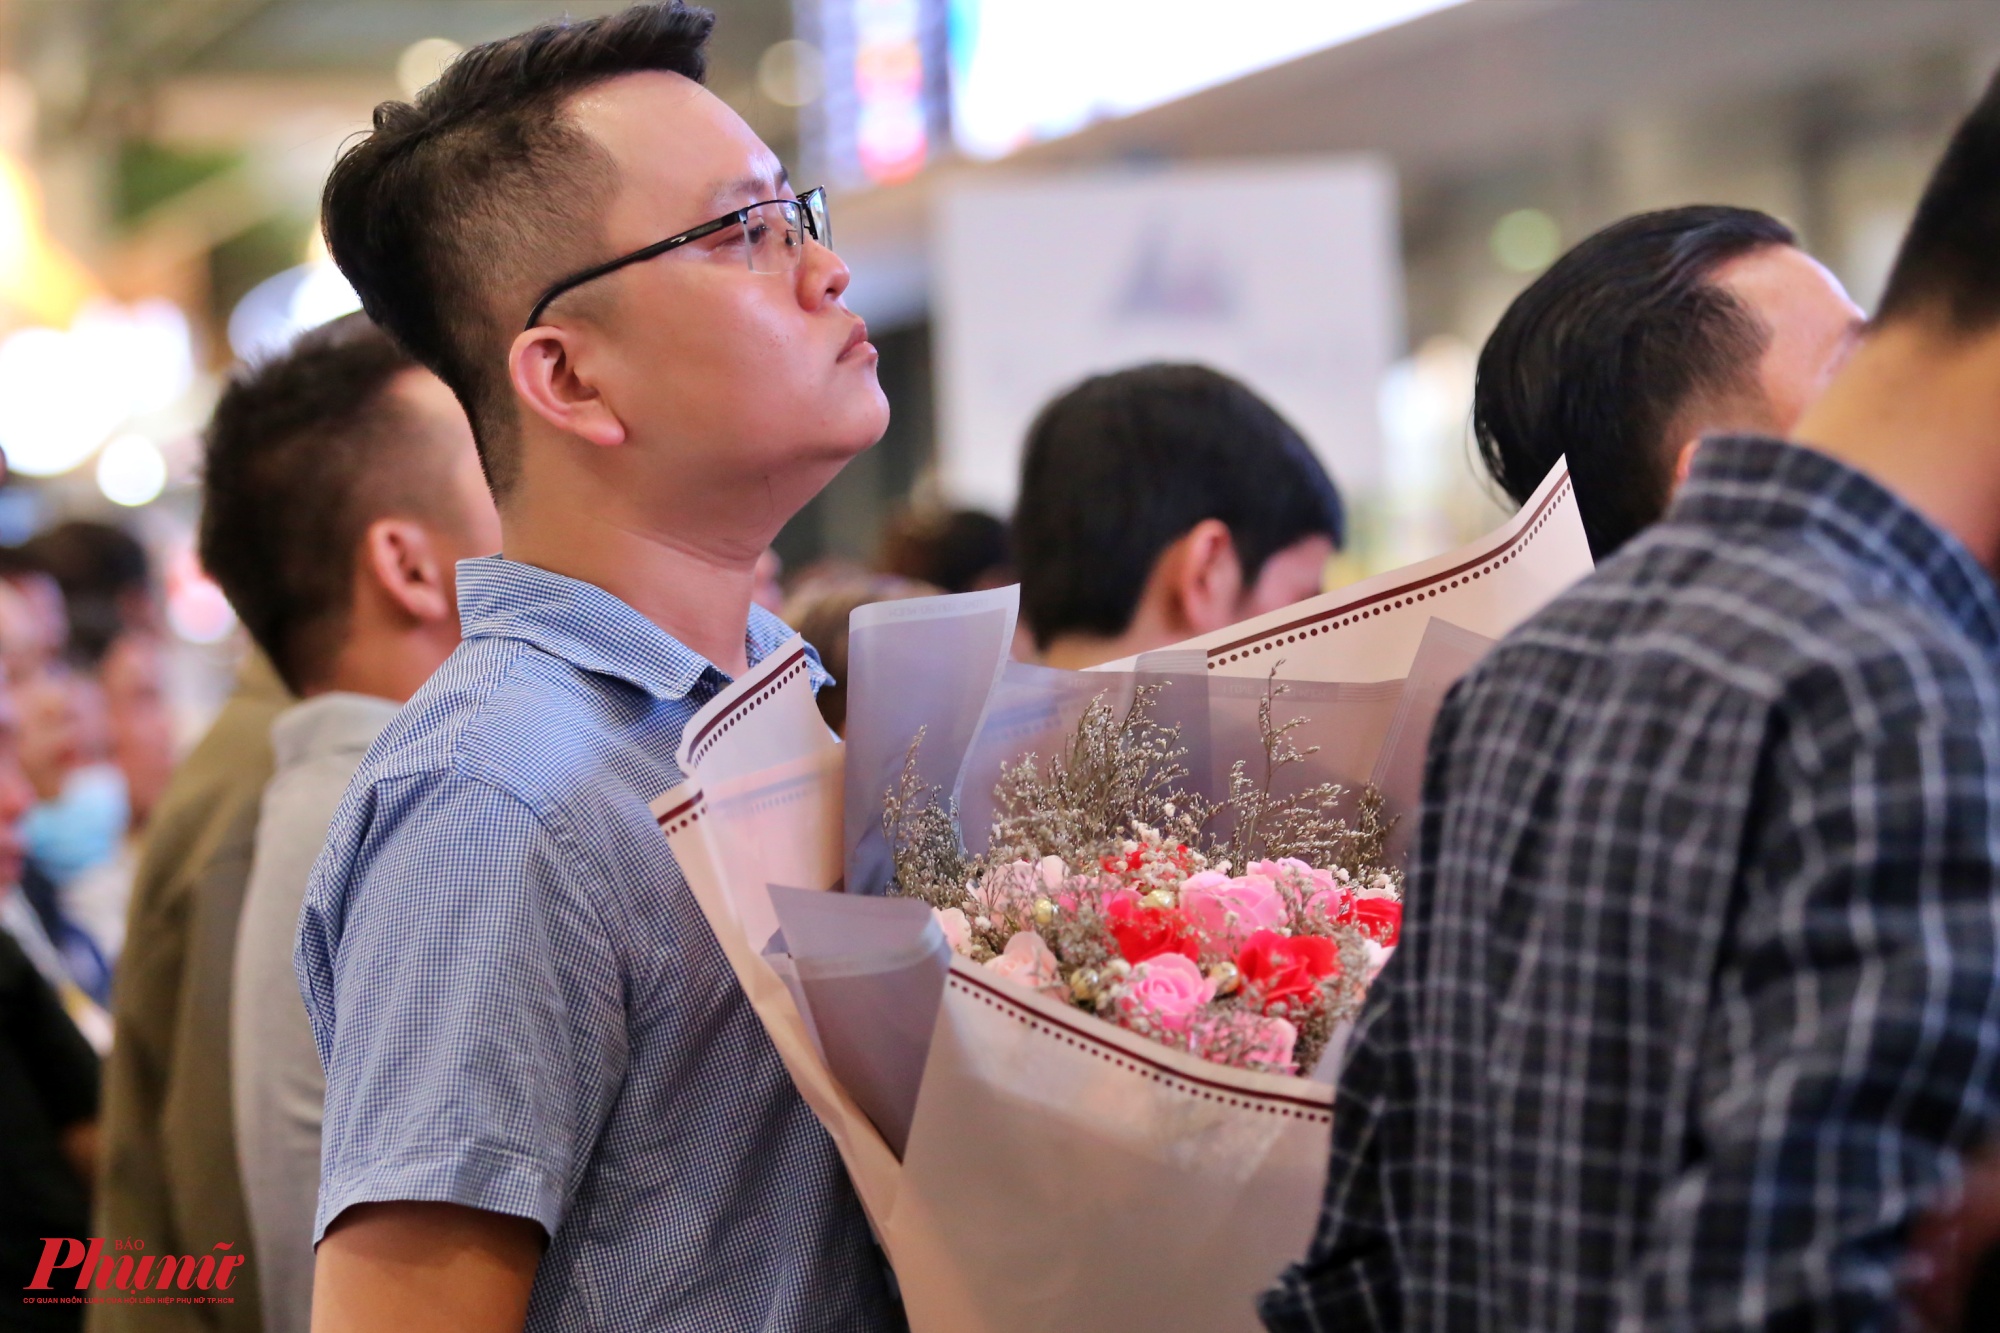 Nhiều người mang theo hoa và quà đứng ngồi nhấp nhổm để tìm ra bóng dáng người thân quen đang lẫn trong các hành khách khác.